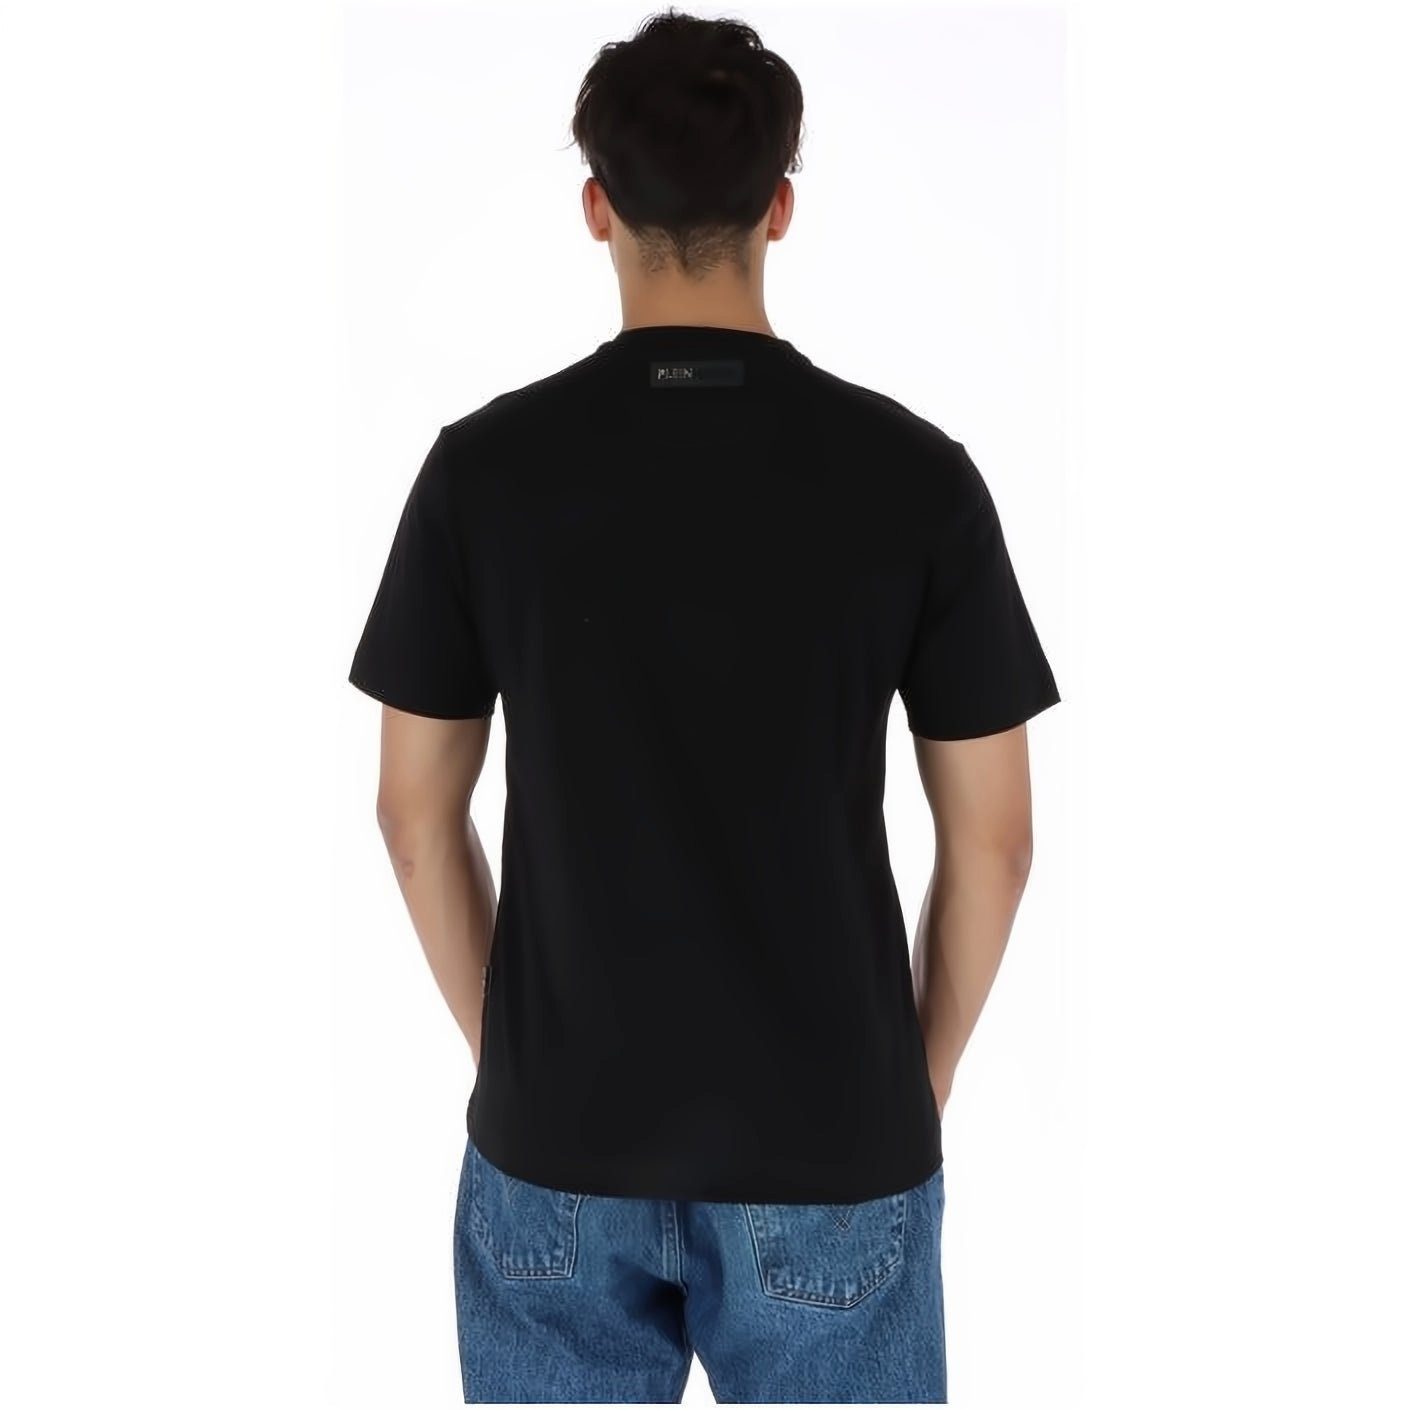 Farbauswahl Stylischer PLEIN SPORT hoher NECK Tragekomfort, Look, vielfältige T-Shirt ROUND